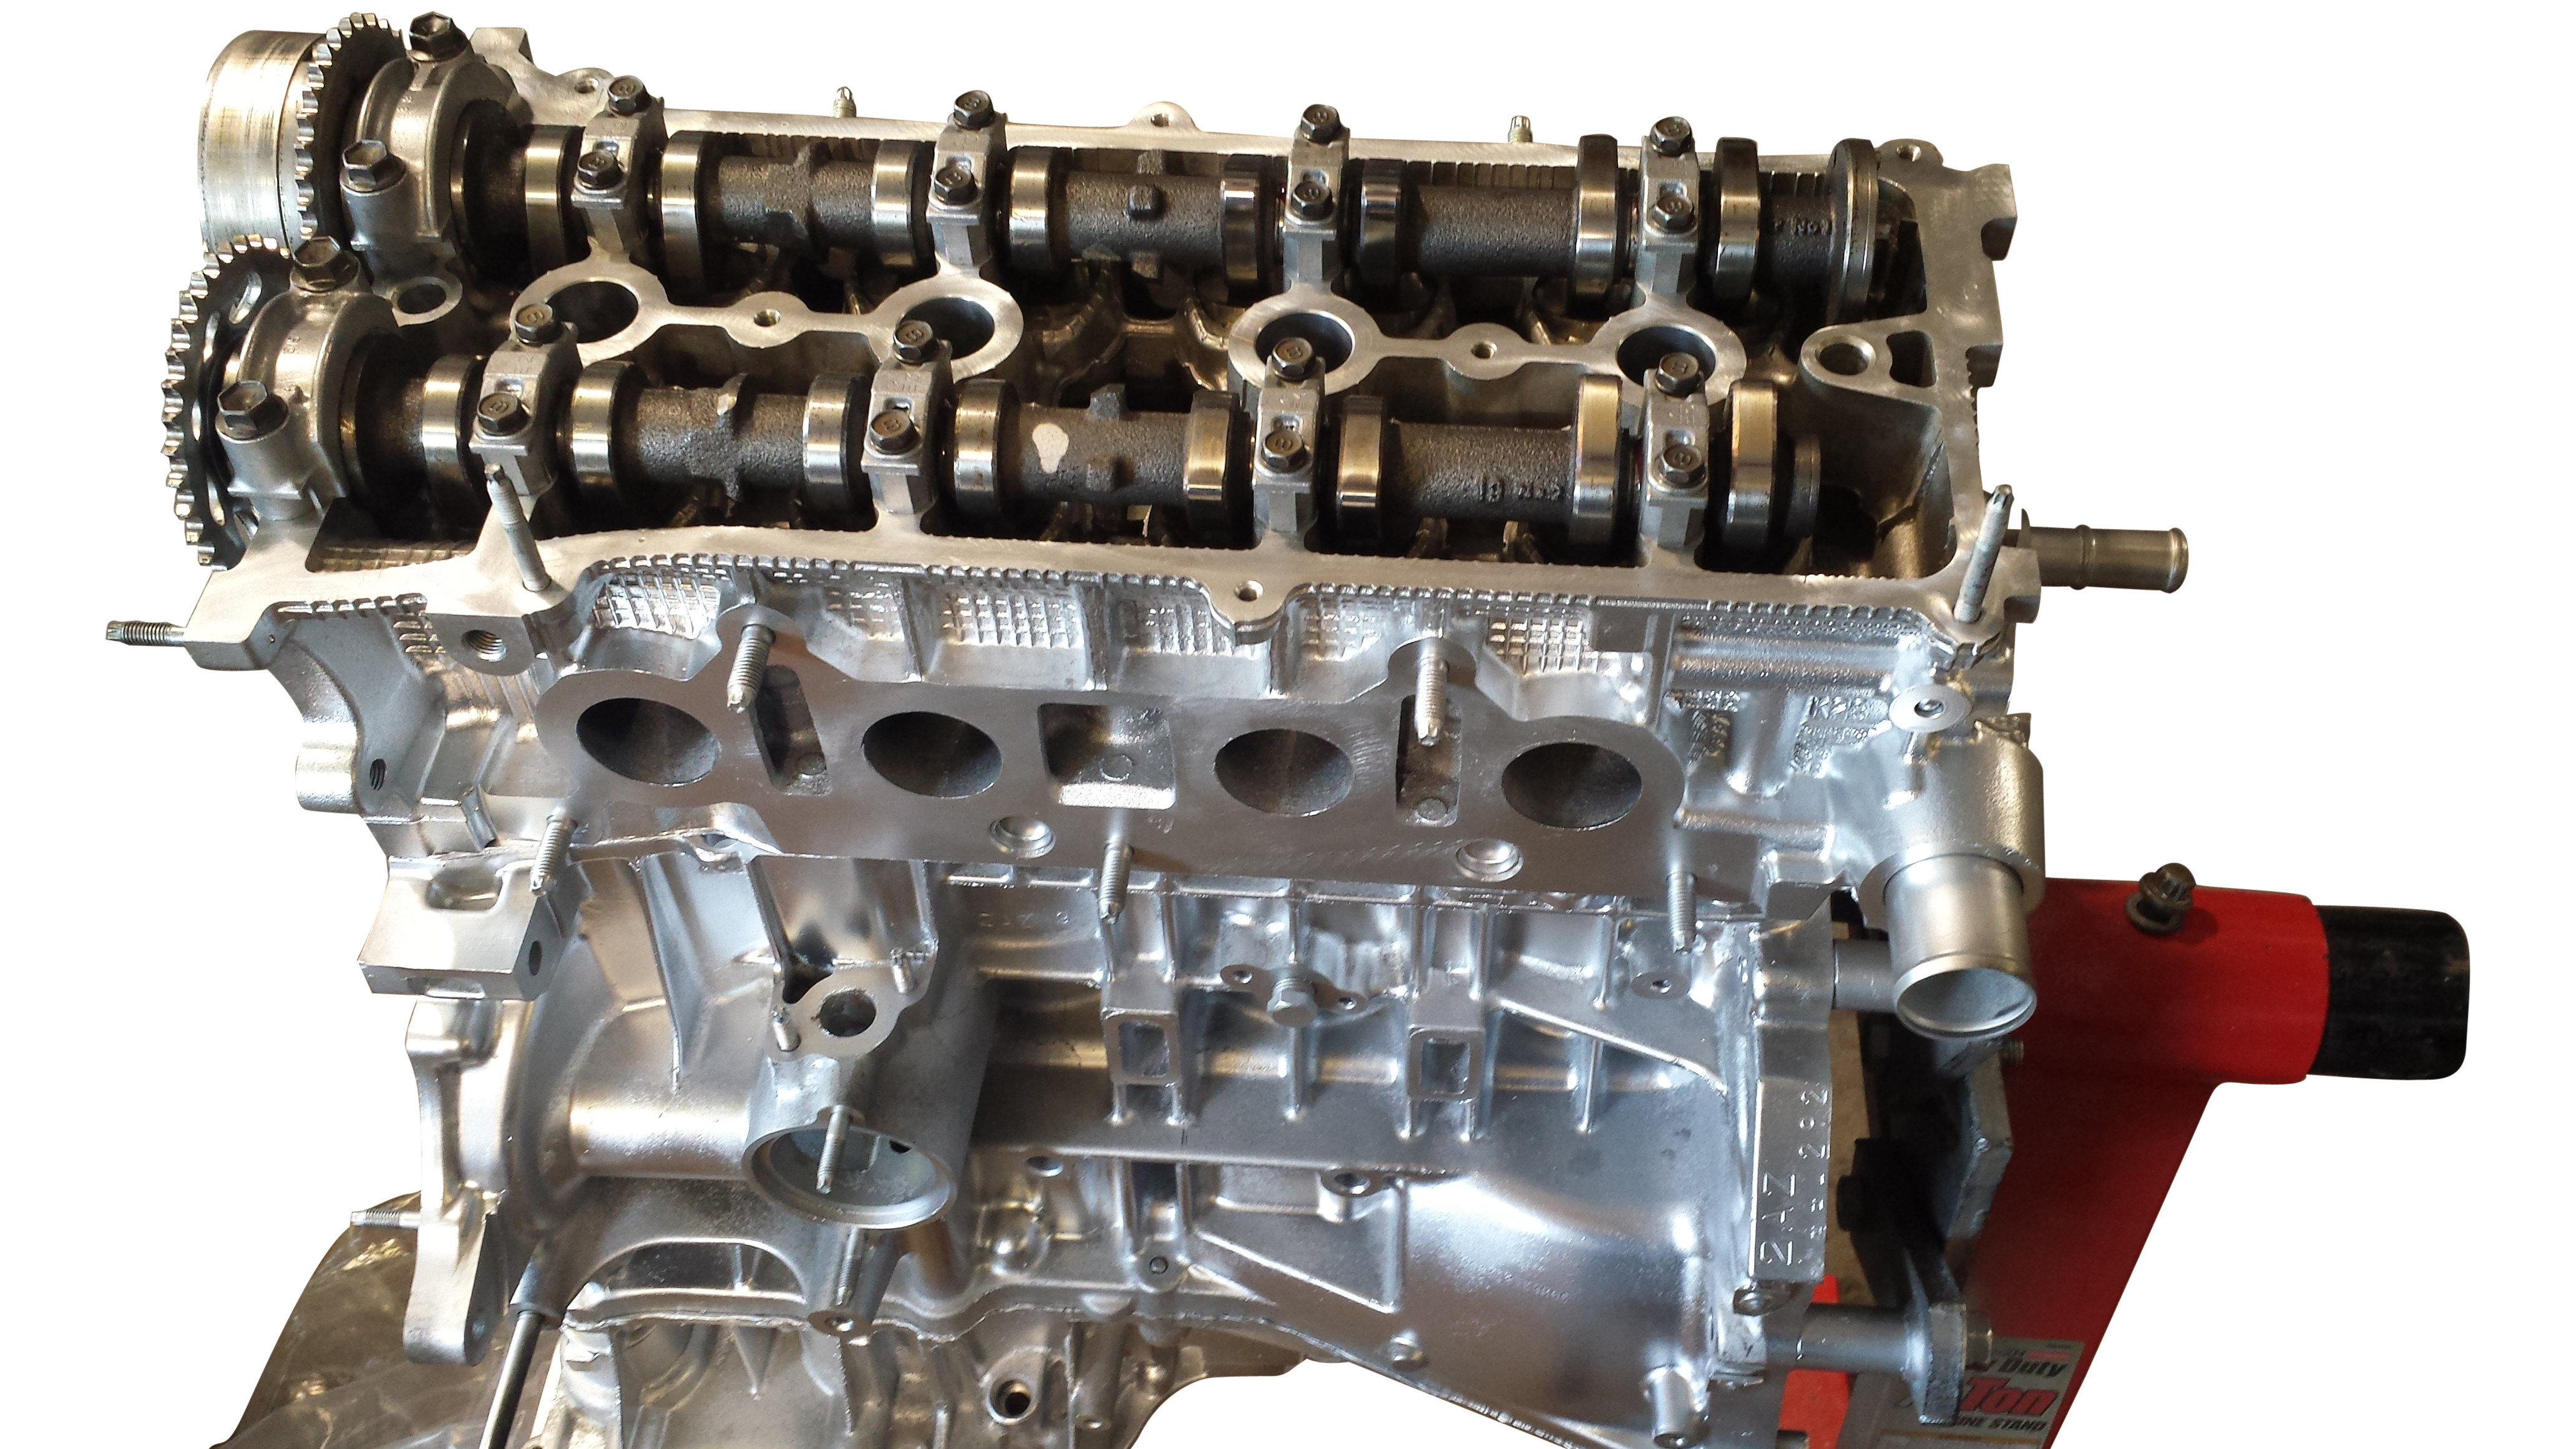 Rebuilt Toyota 2AZ engine